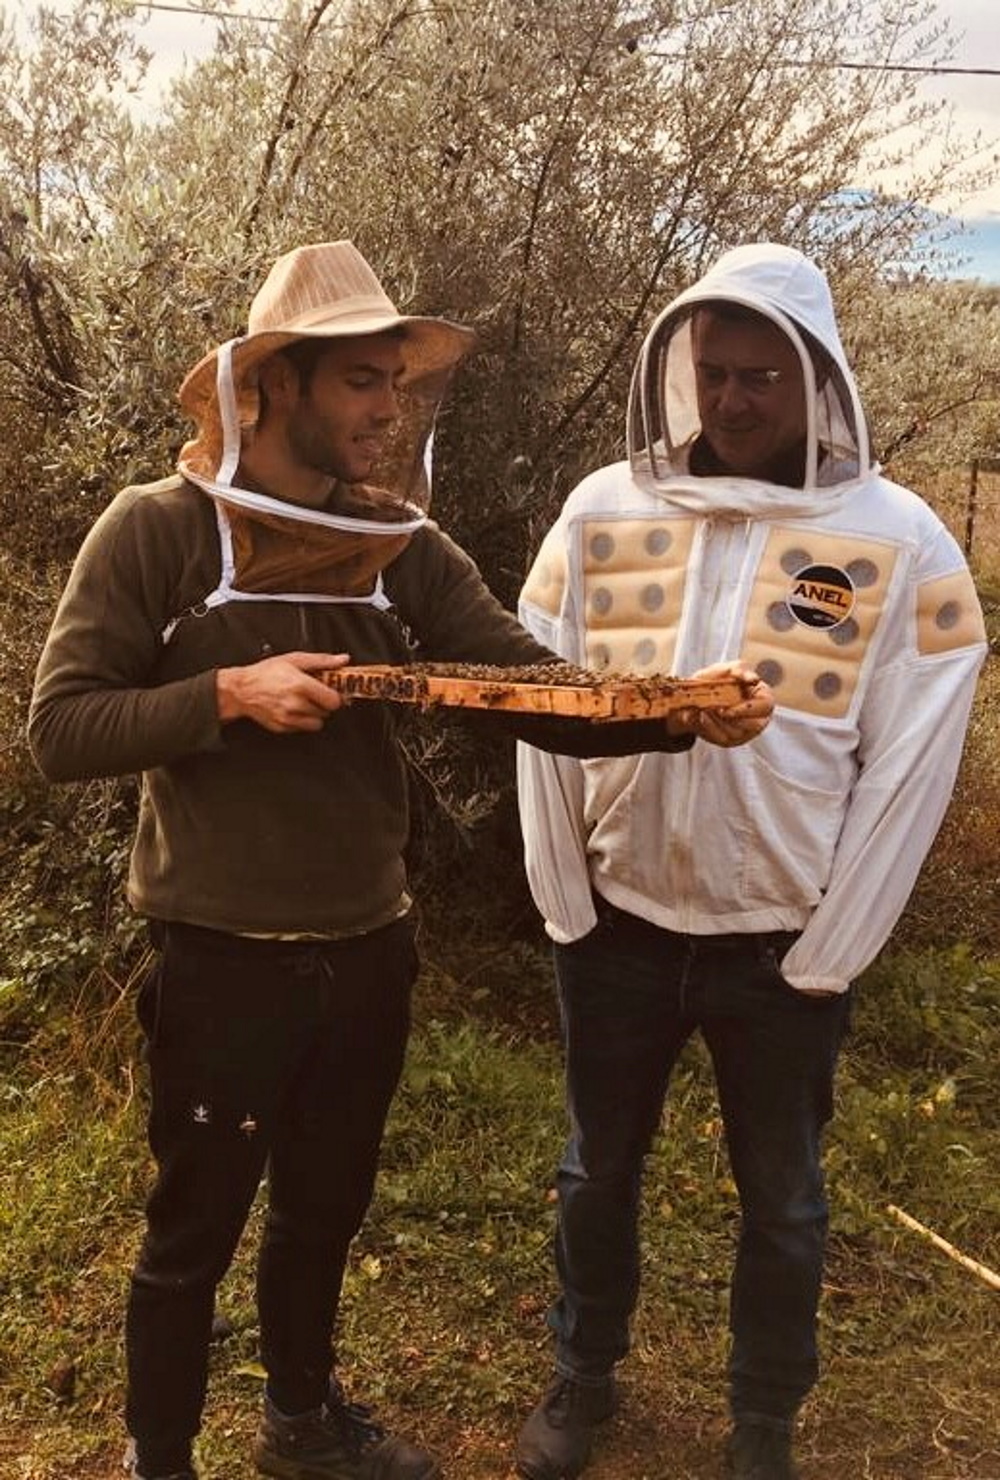 Χάρης Σταμάτης: Ο Αγρινιώτης μελισσοκόμος που κατέκτησε το ελληνικό Tik Tok